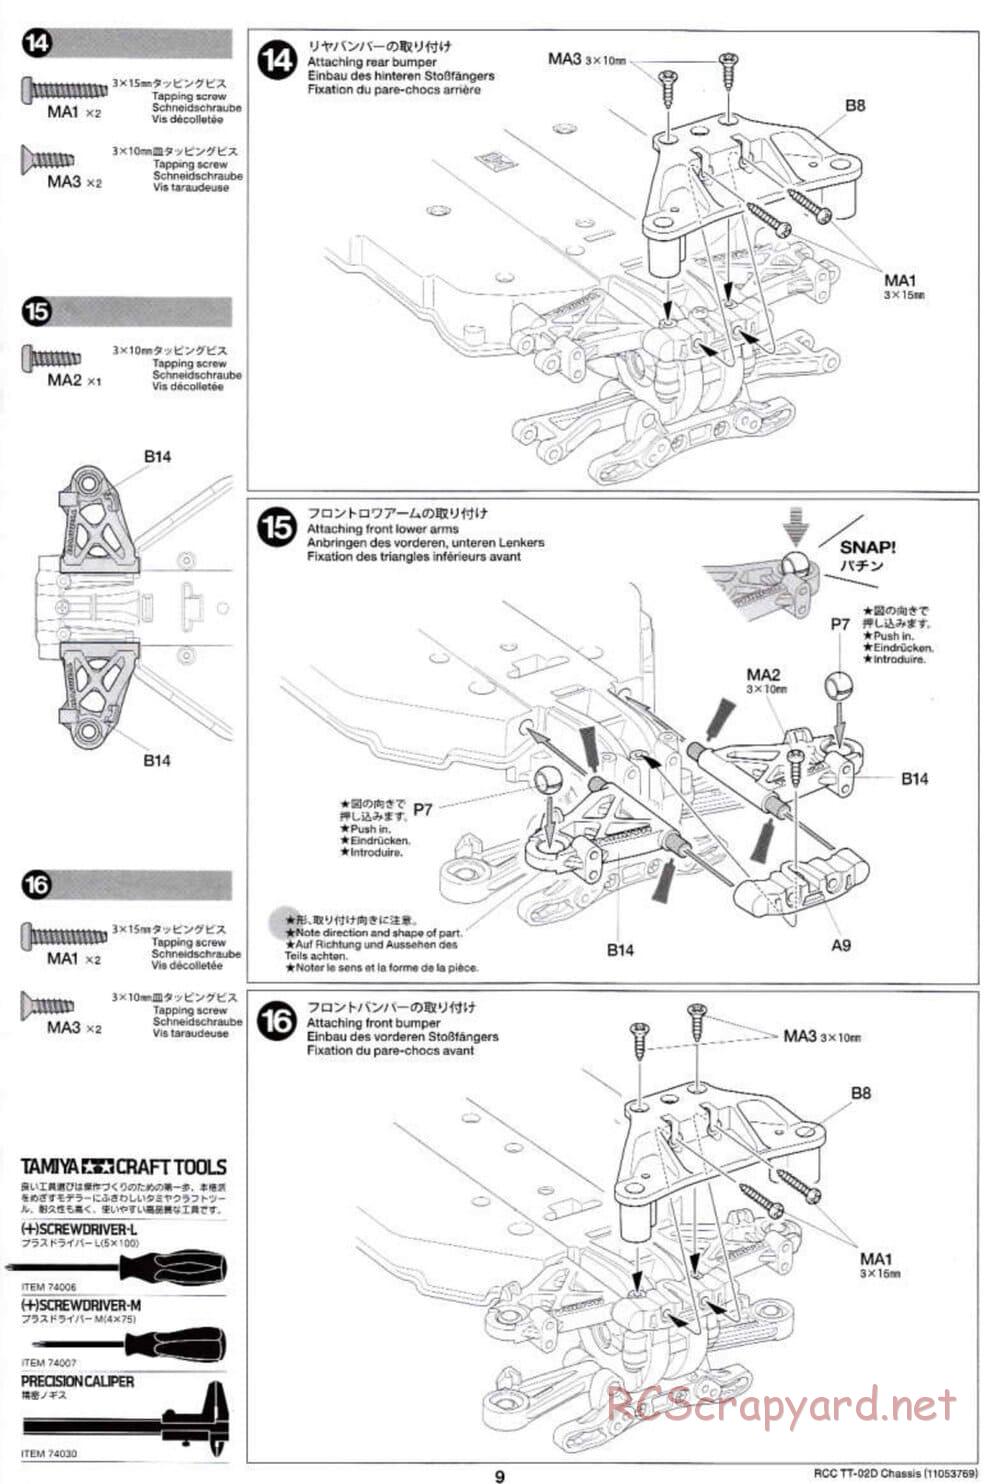 Tamiya - TT-02D Chassis - Manual - Page 9